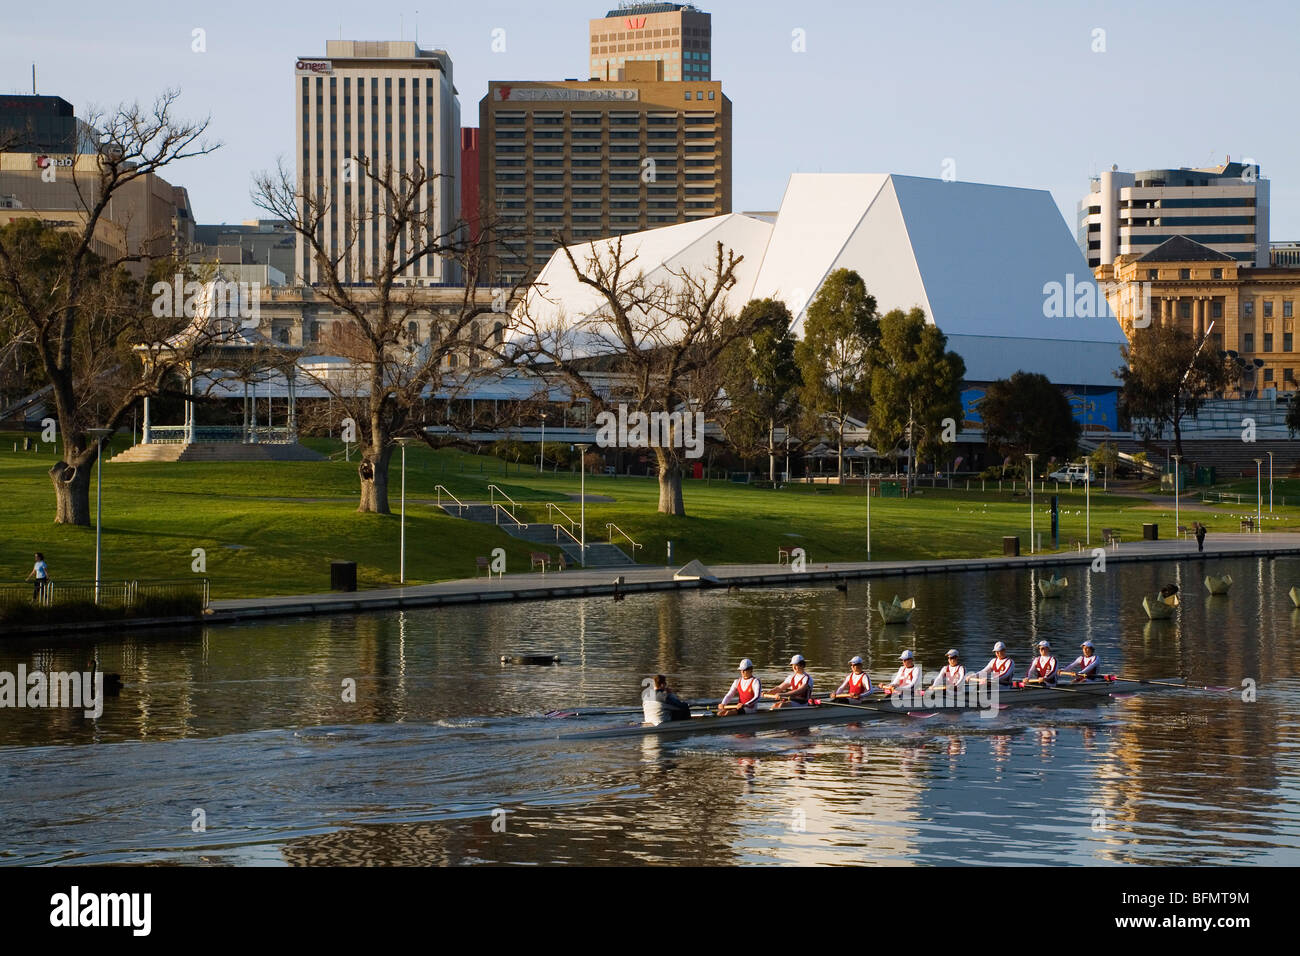 Australien, South Australia, Adelaide. Am frühen Morgen Ruderer auf dem River Torrens mit Adelaide Festival Centre im Hintergrund. Stockfoto